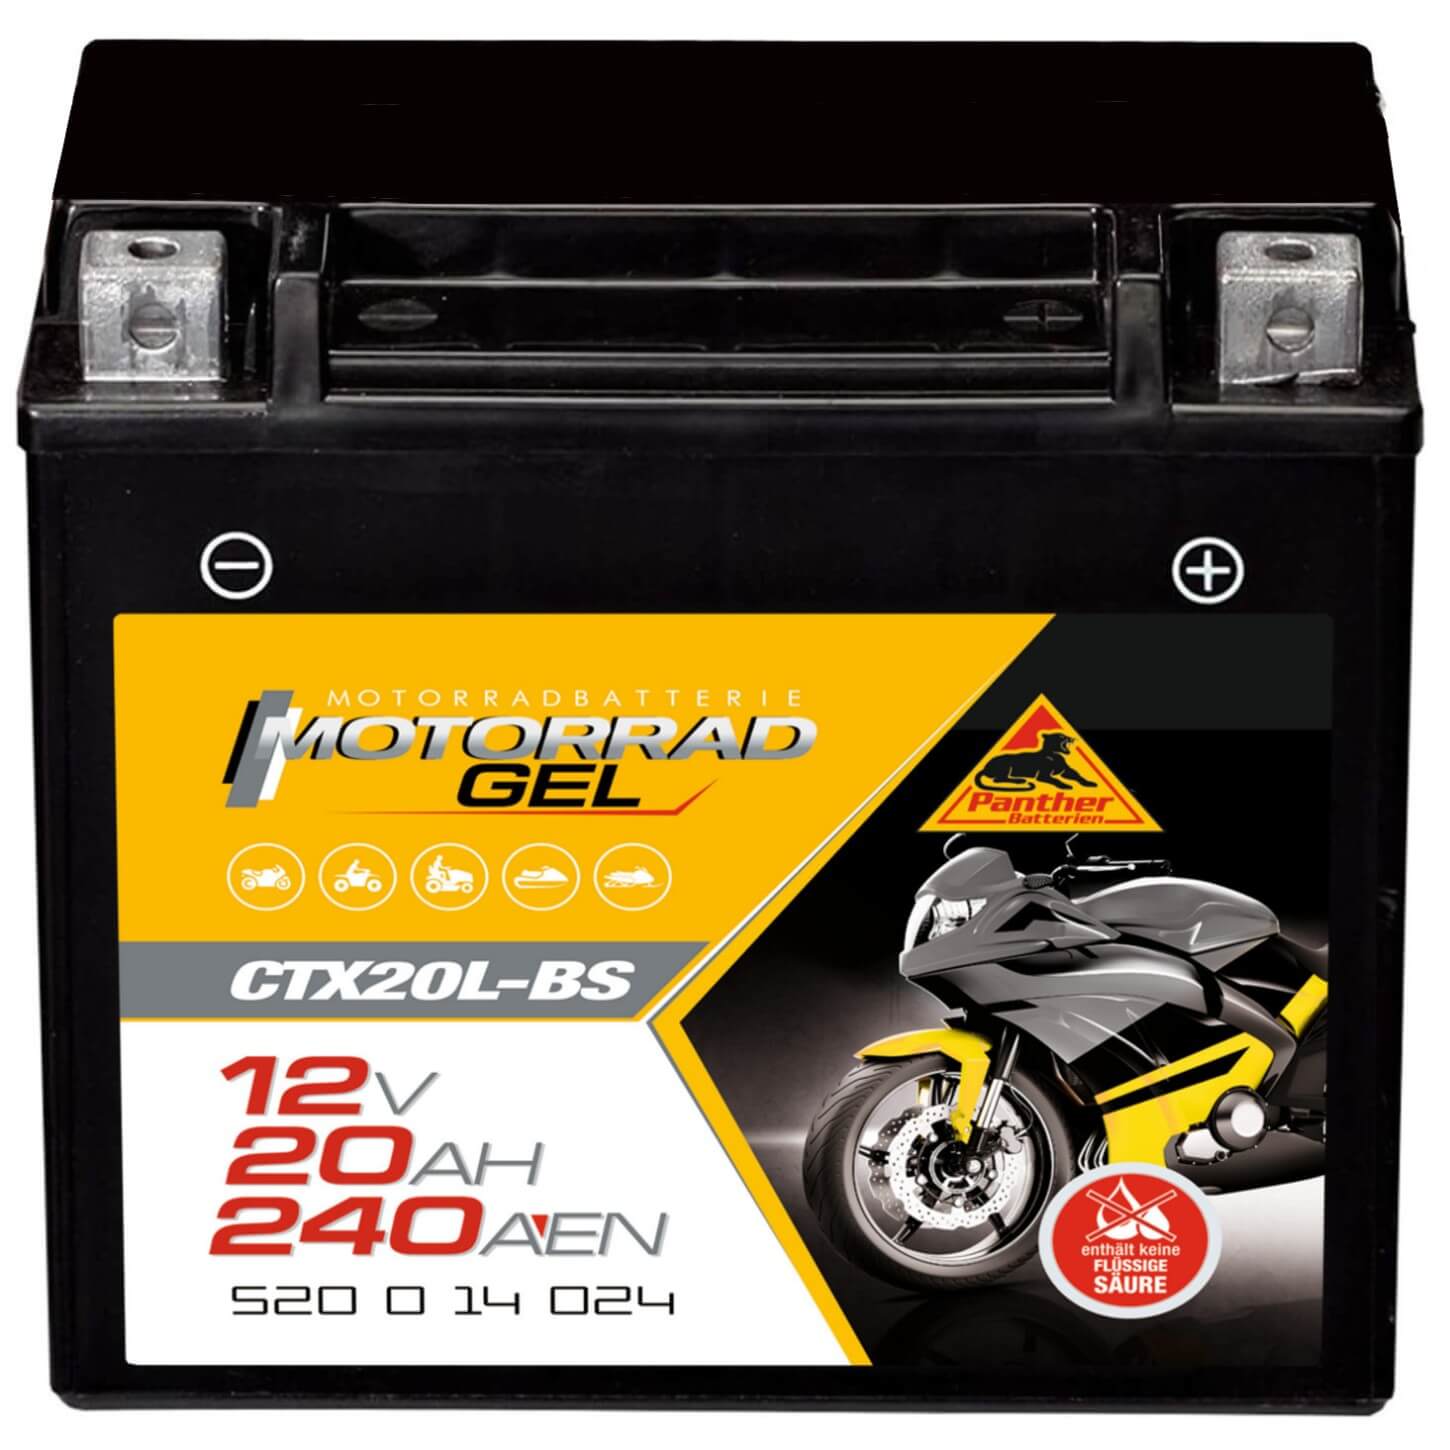 http://www.batterie-industrie-germany.de/cdn/shop/files/Motorradbatterie-Motorrad-GEL-CTX20L-BS-PantherGEL52014-12V-20Ah-Front.jpg?v=1700731879